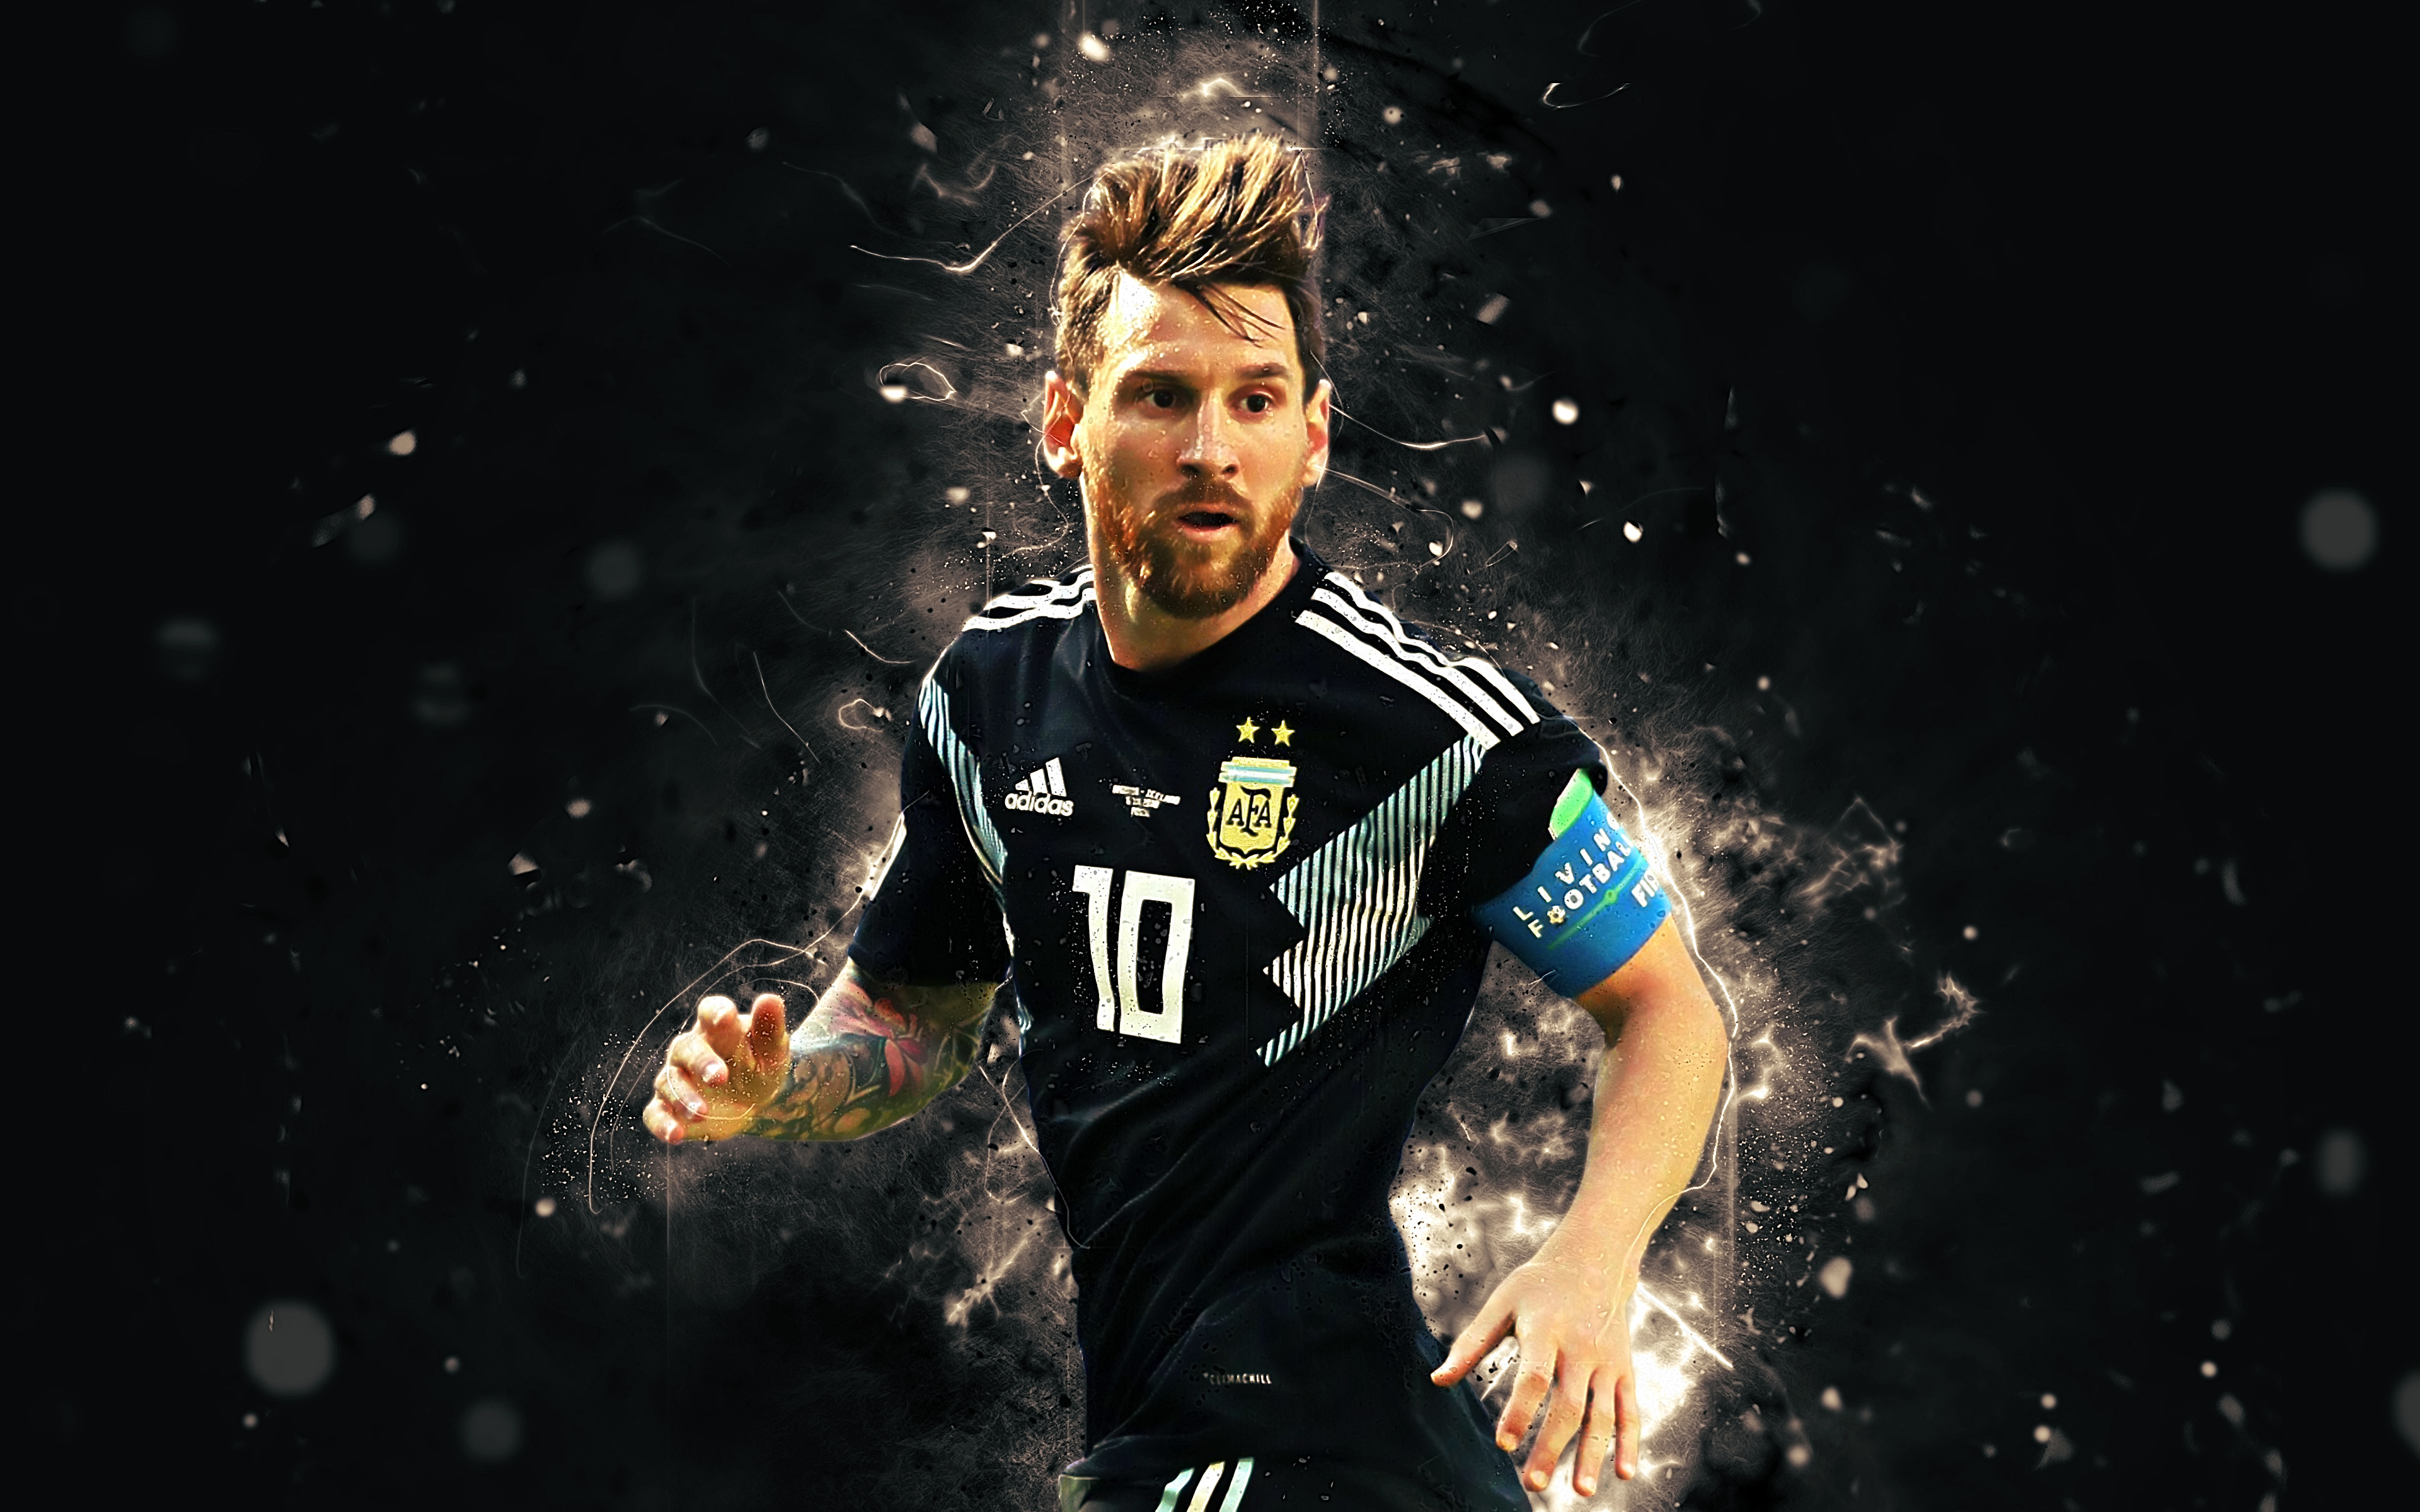 Messi Desktop Wallpaper